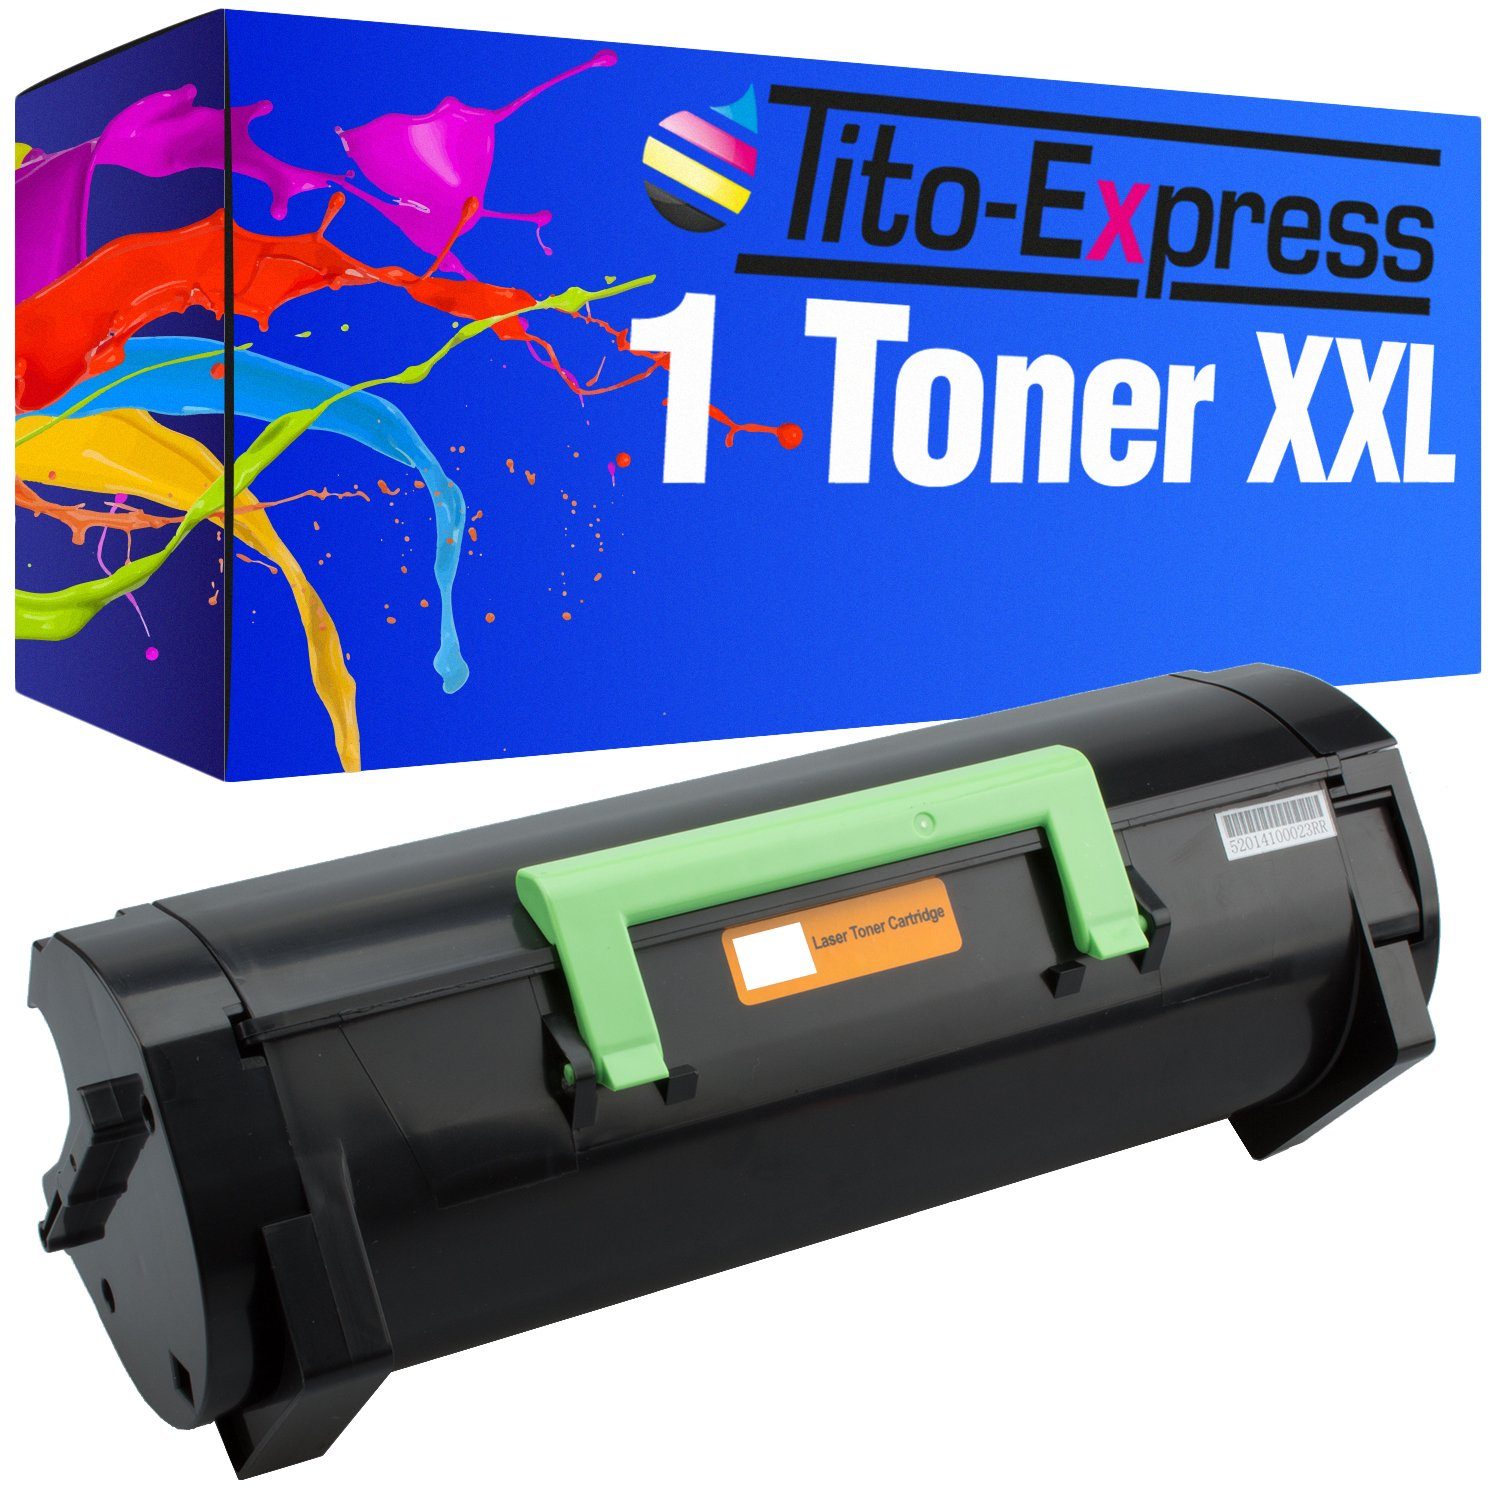 Tito-Express Tonerpatrone ersetzt Toner Lexmark MX-310 Lexmark MX 310 LexmarkMX310, (1x Black), für MX 310 DN MX 410 de MX 510 de MX 511 de MX 511 dhe MX 511 dte